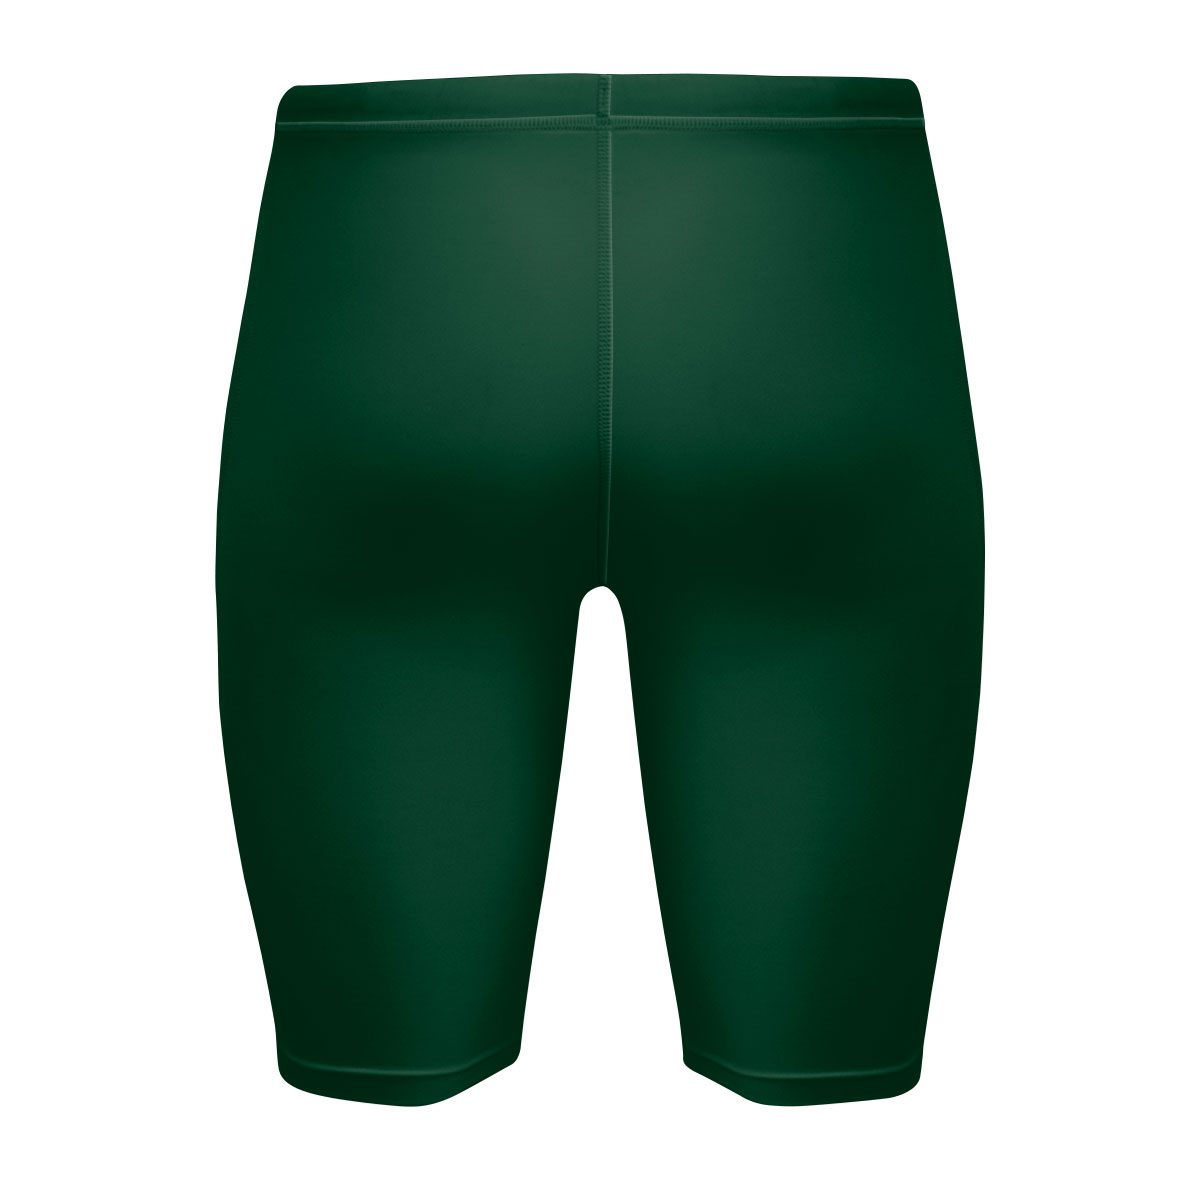 Mens Compression Shorts - Green